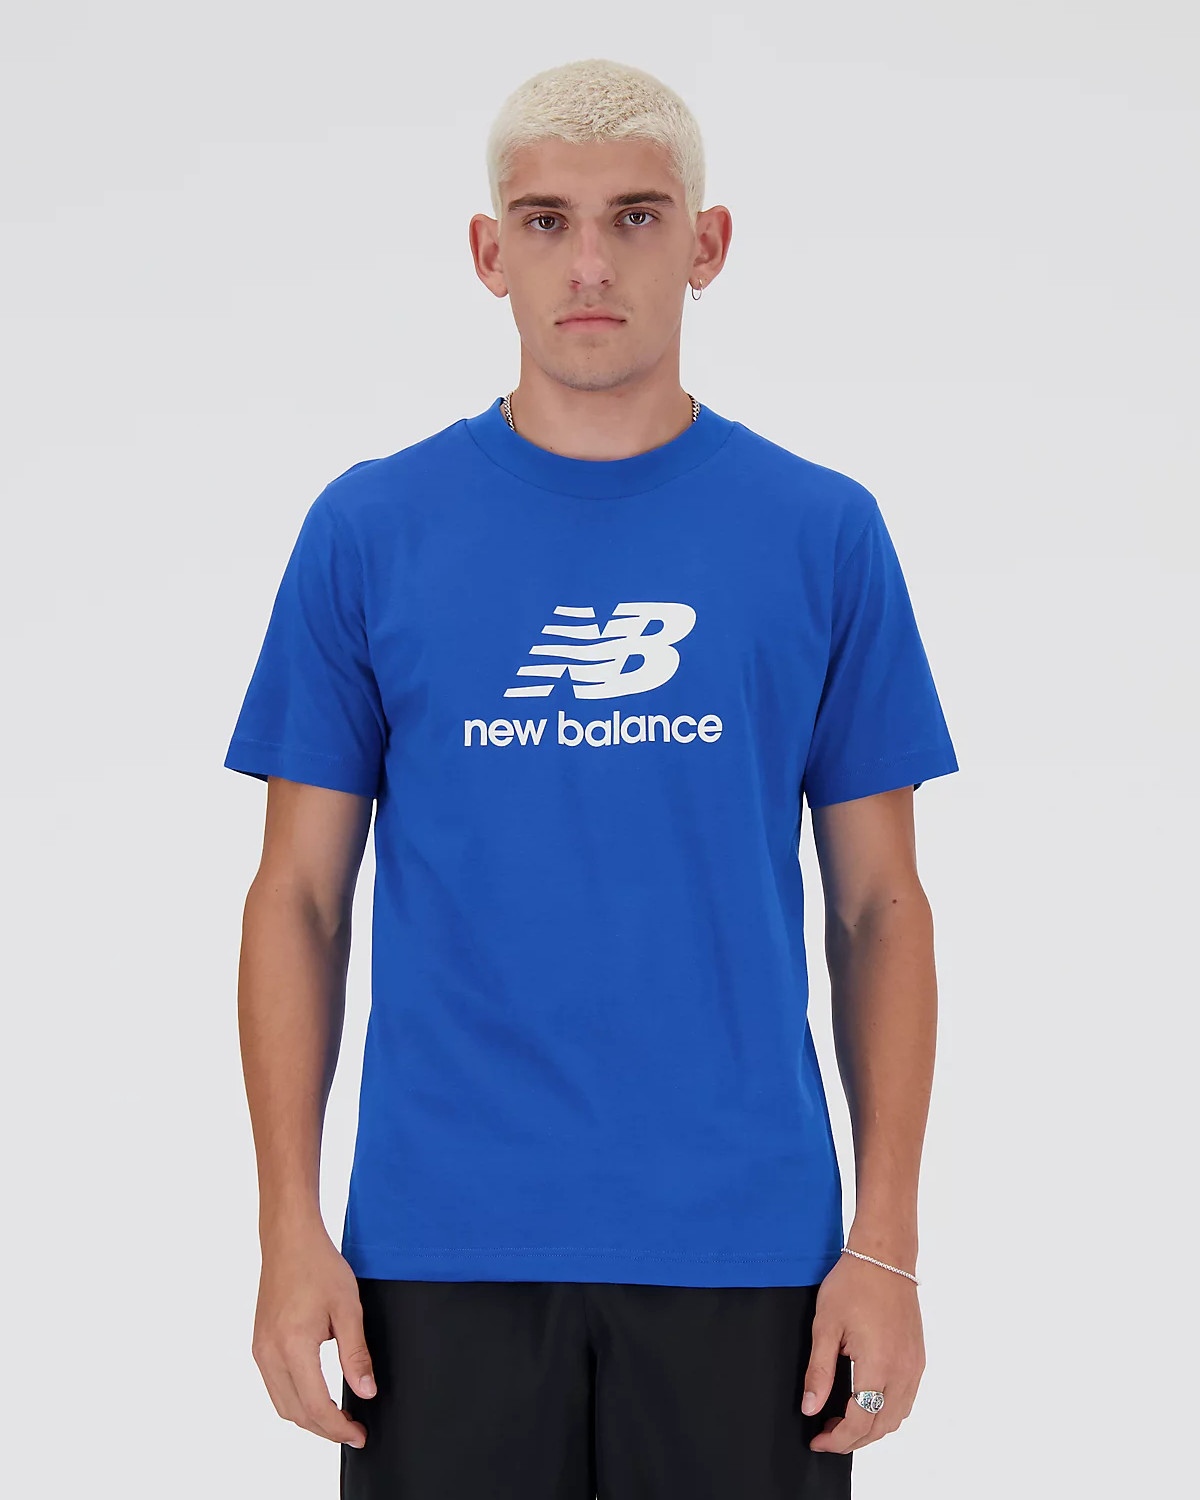  T-shirt maglia maglietta UOMO New Balance Azzurro Stacked Logo Cotone